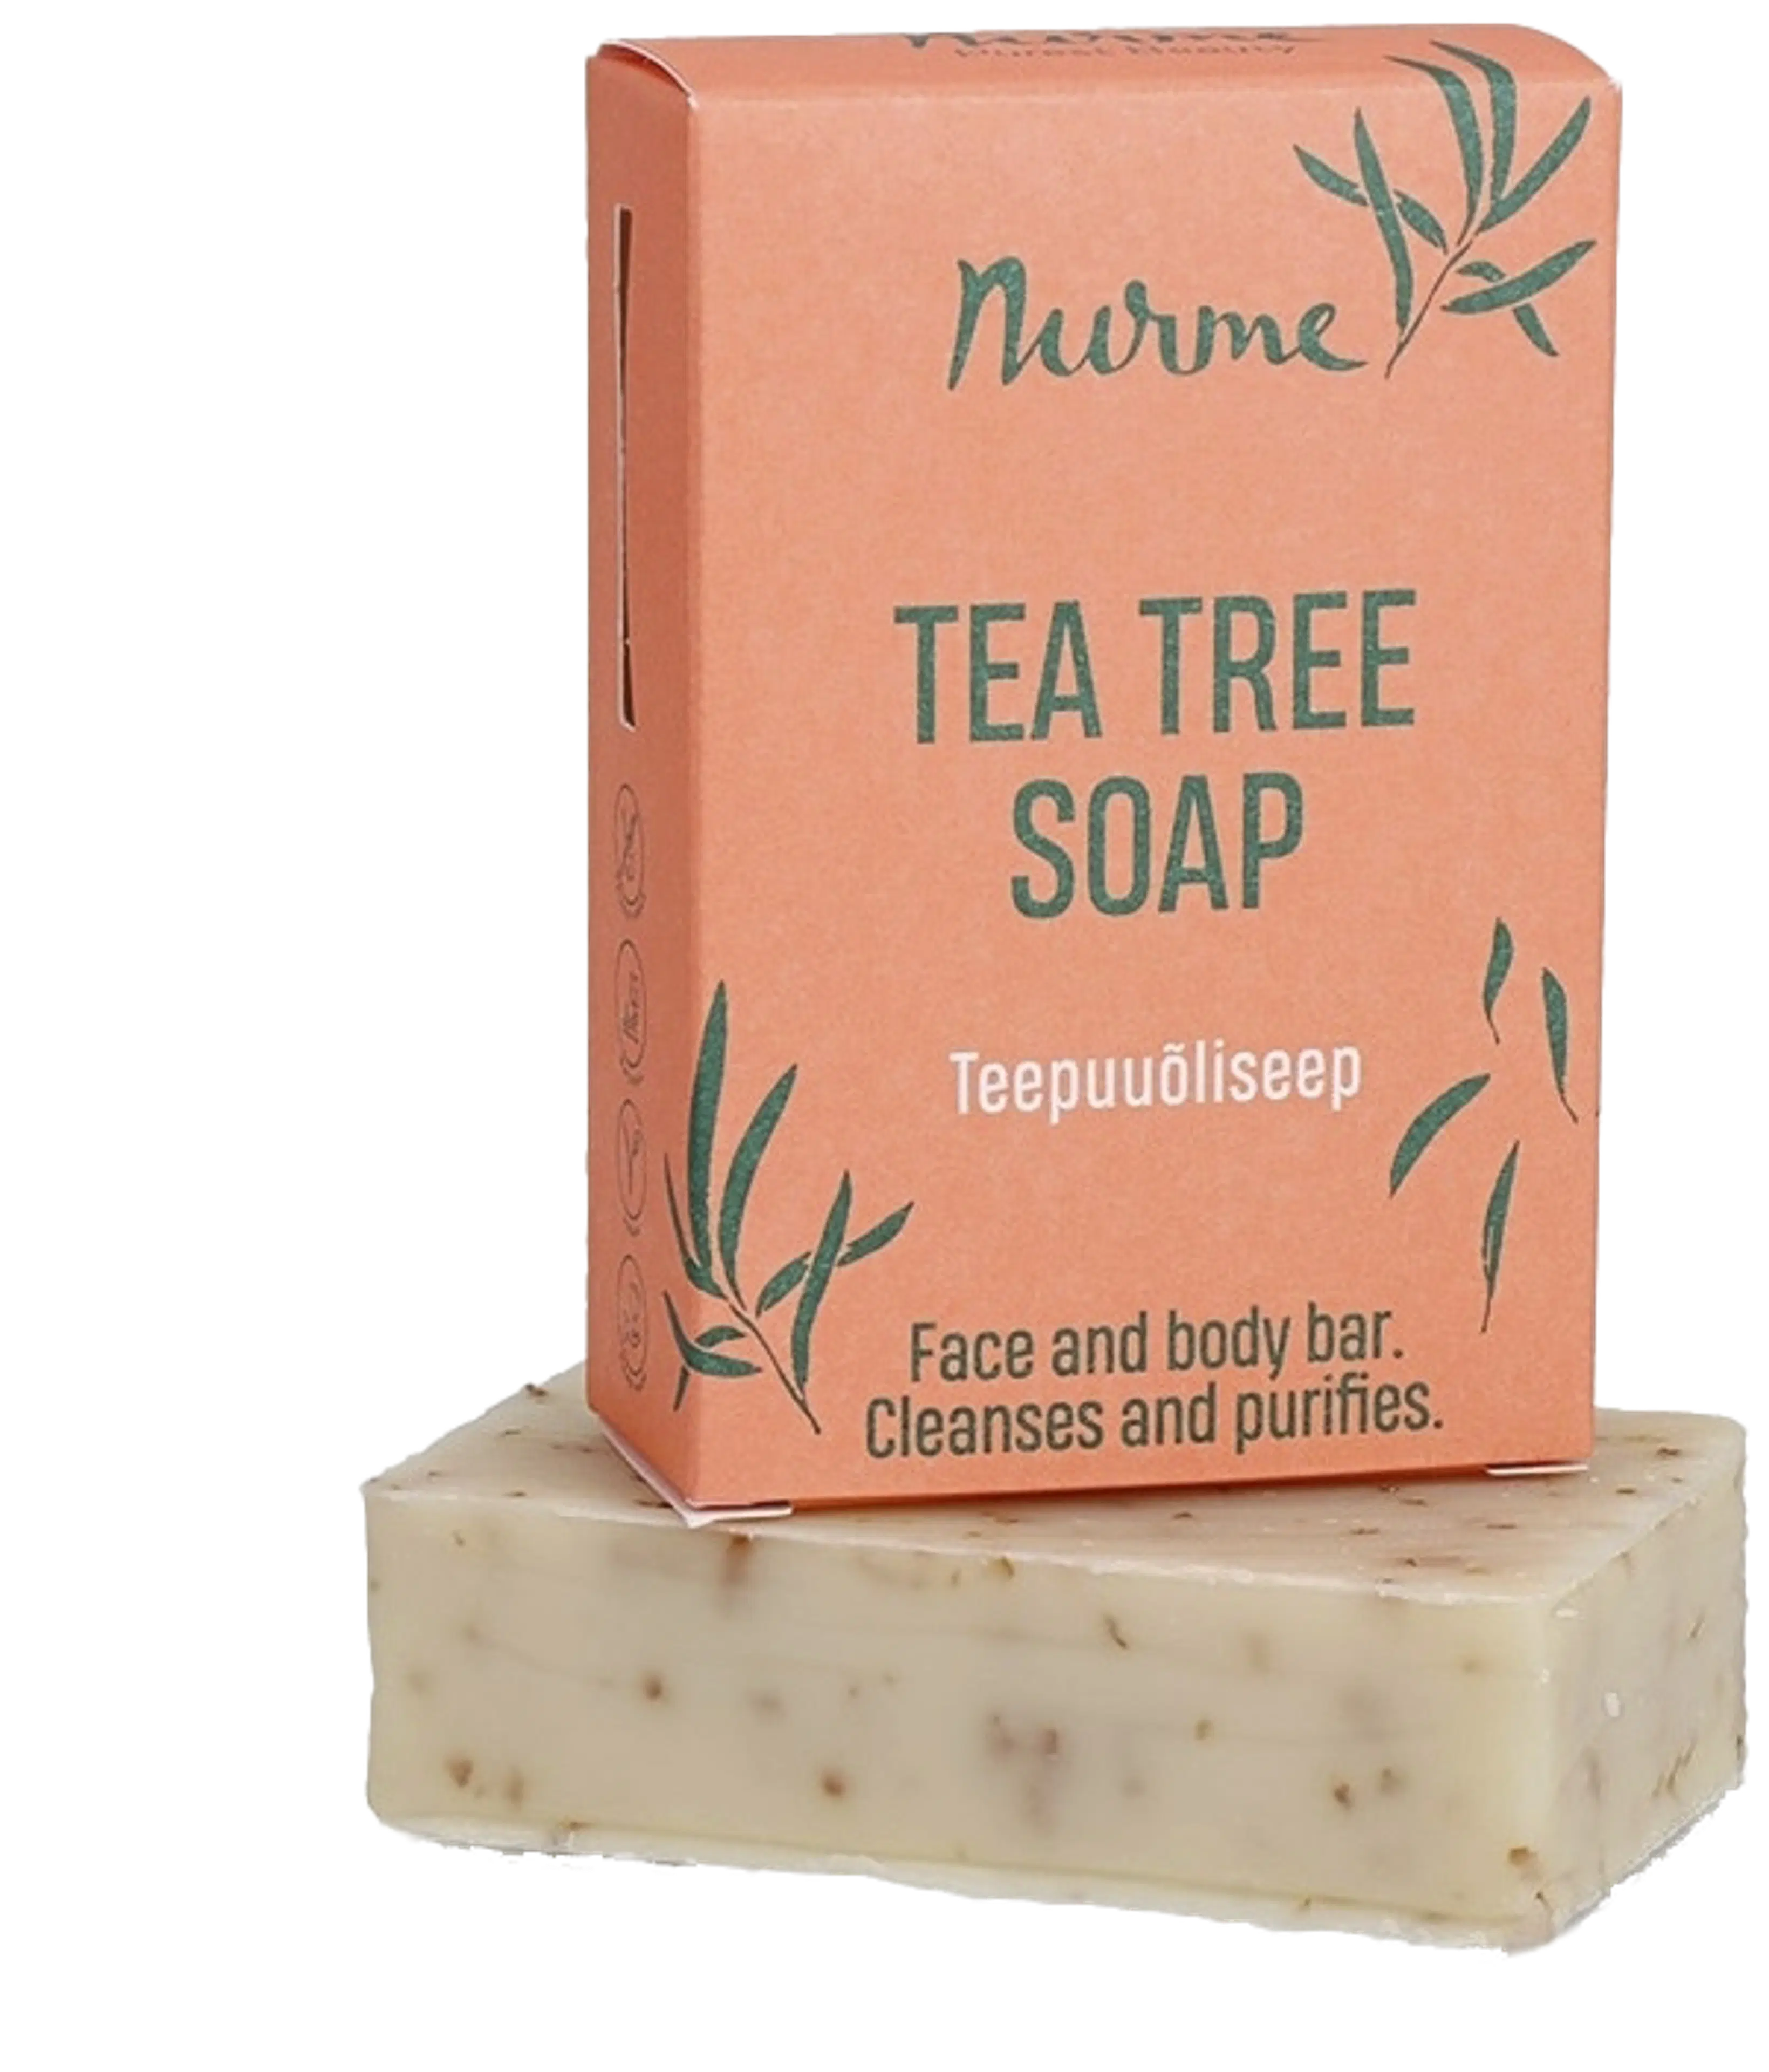 Nurme Tea Tree Soap – Teepuusaippua 100g